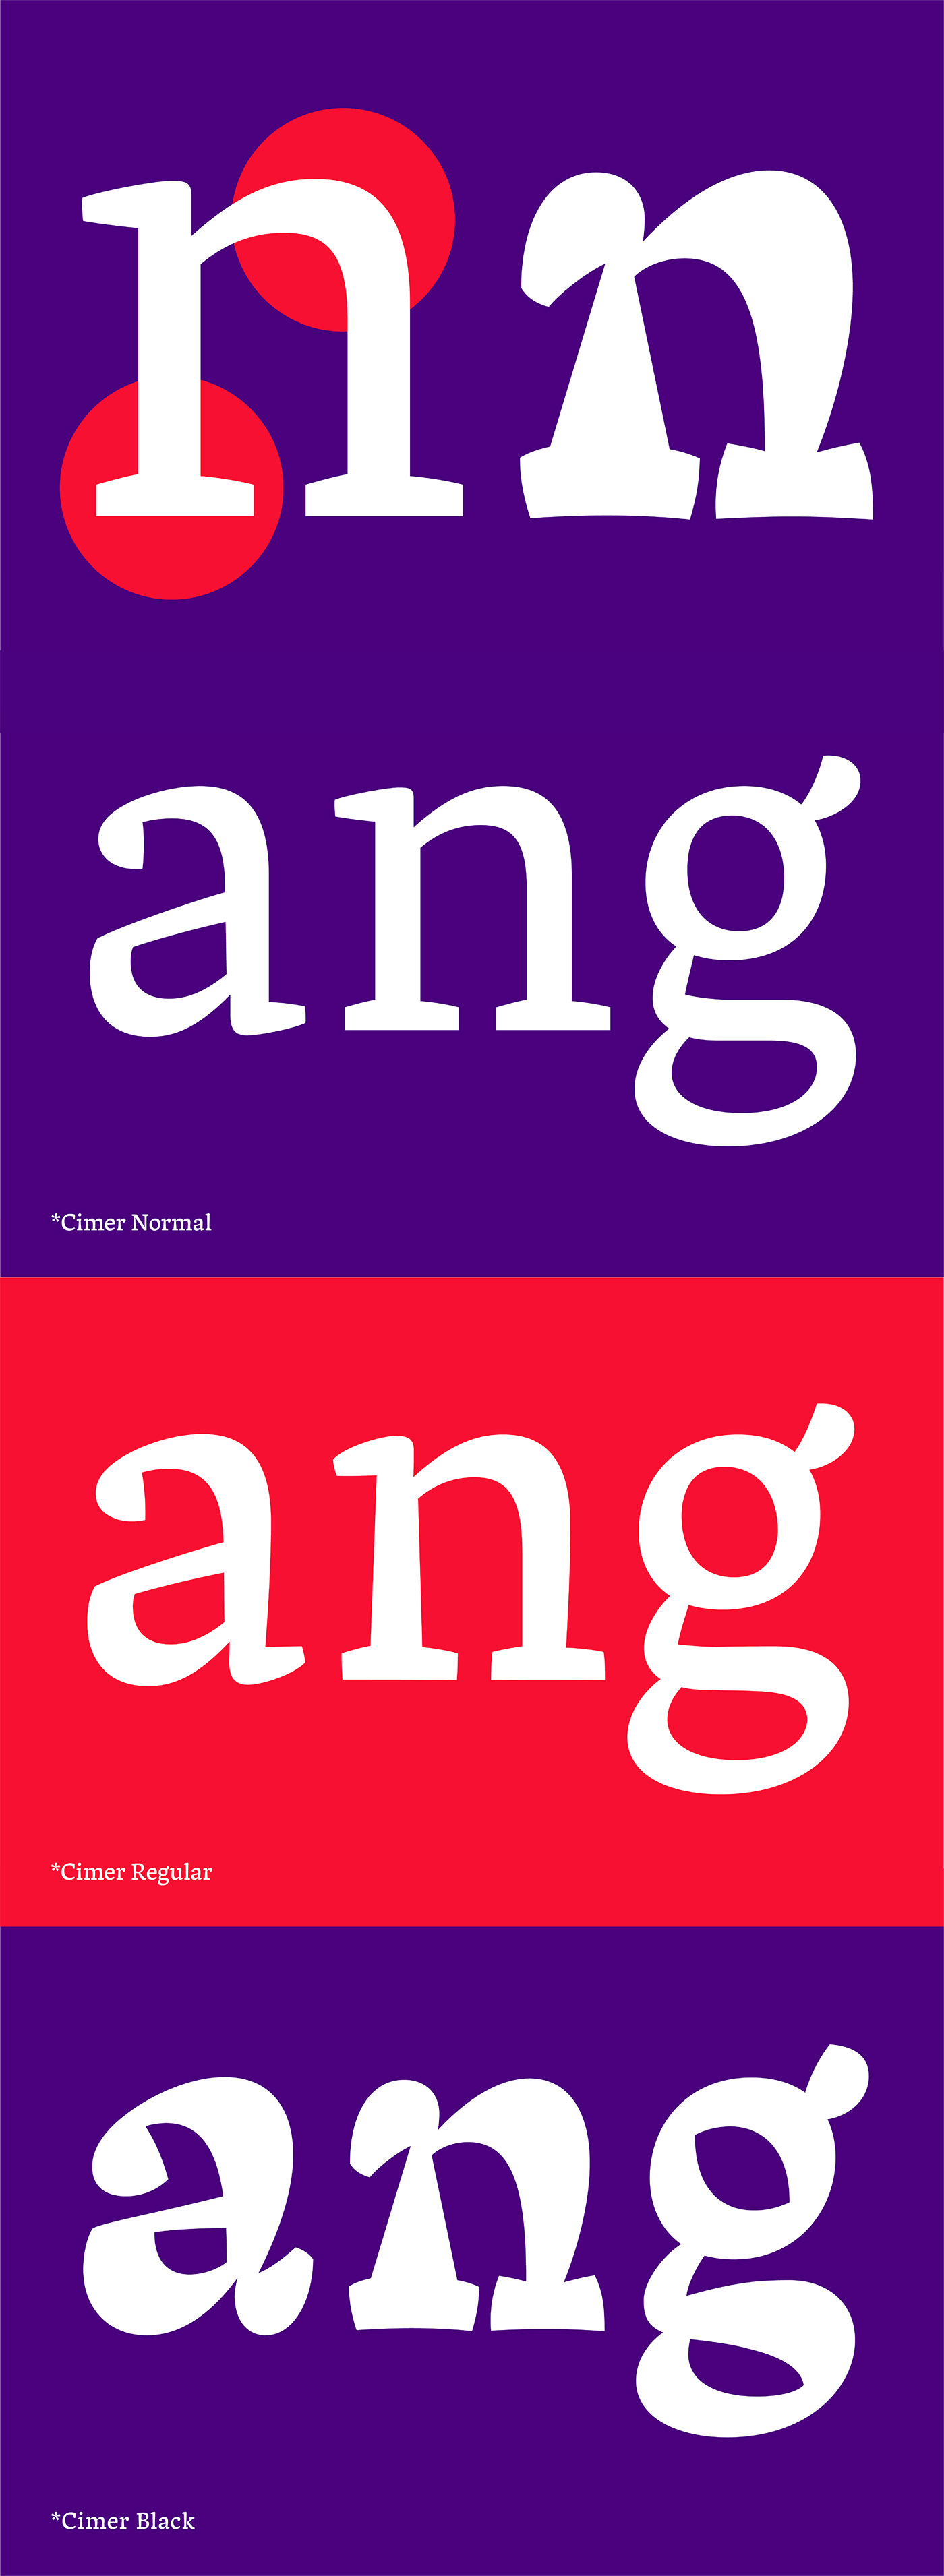 typeparis typeparis18 type design Typeface graphic design  Ruggero Magri